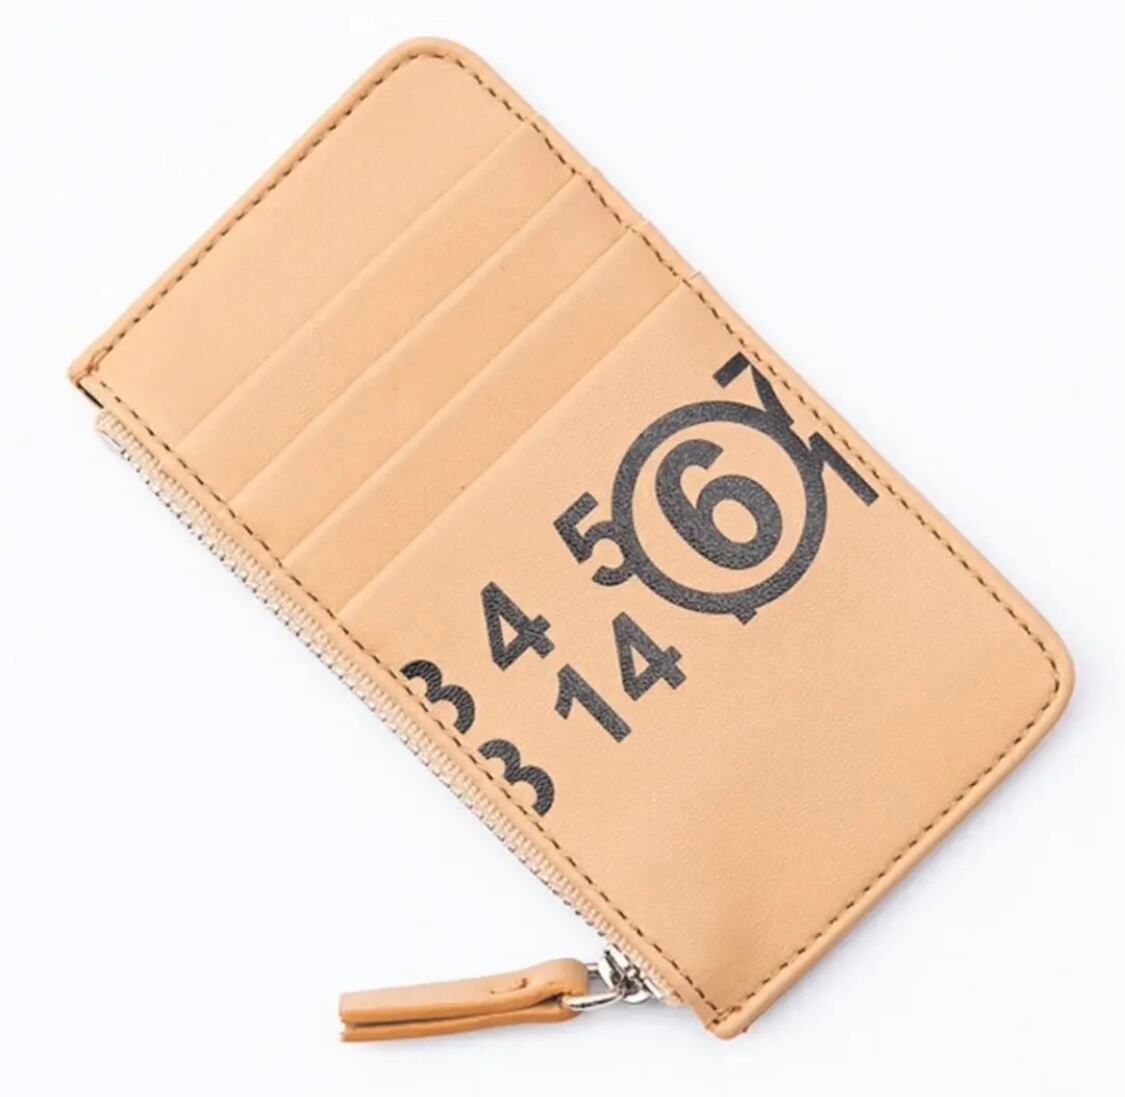 MM6 メゾンマルジェラ フラグメントケース カードケース 財布 ミニ